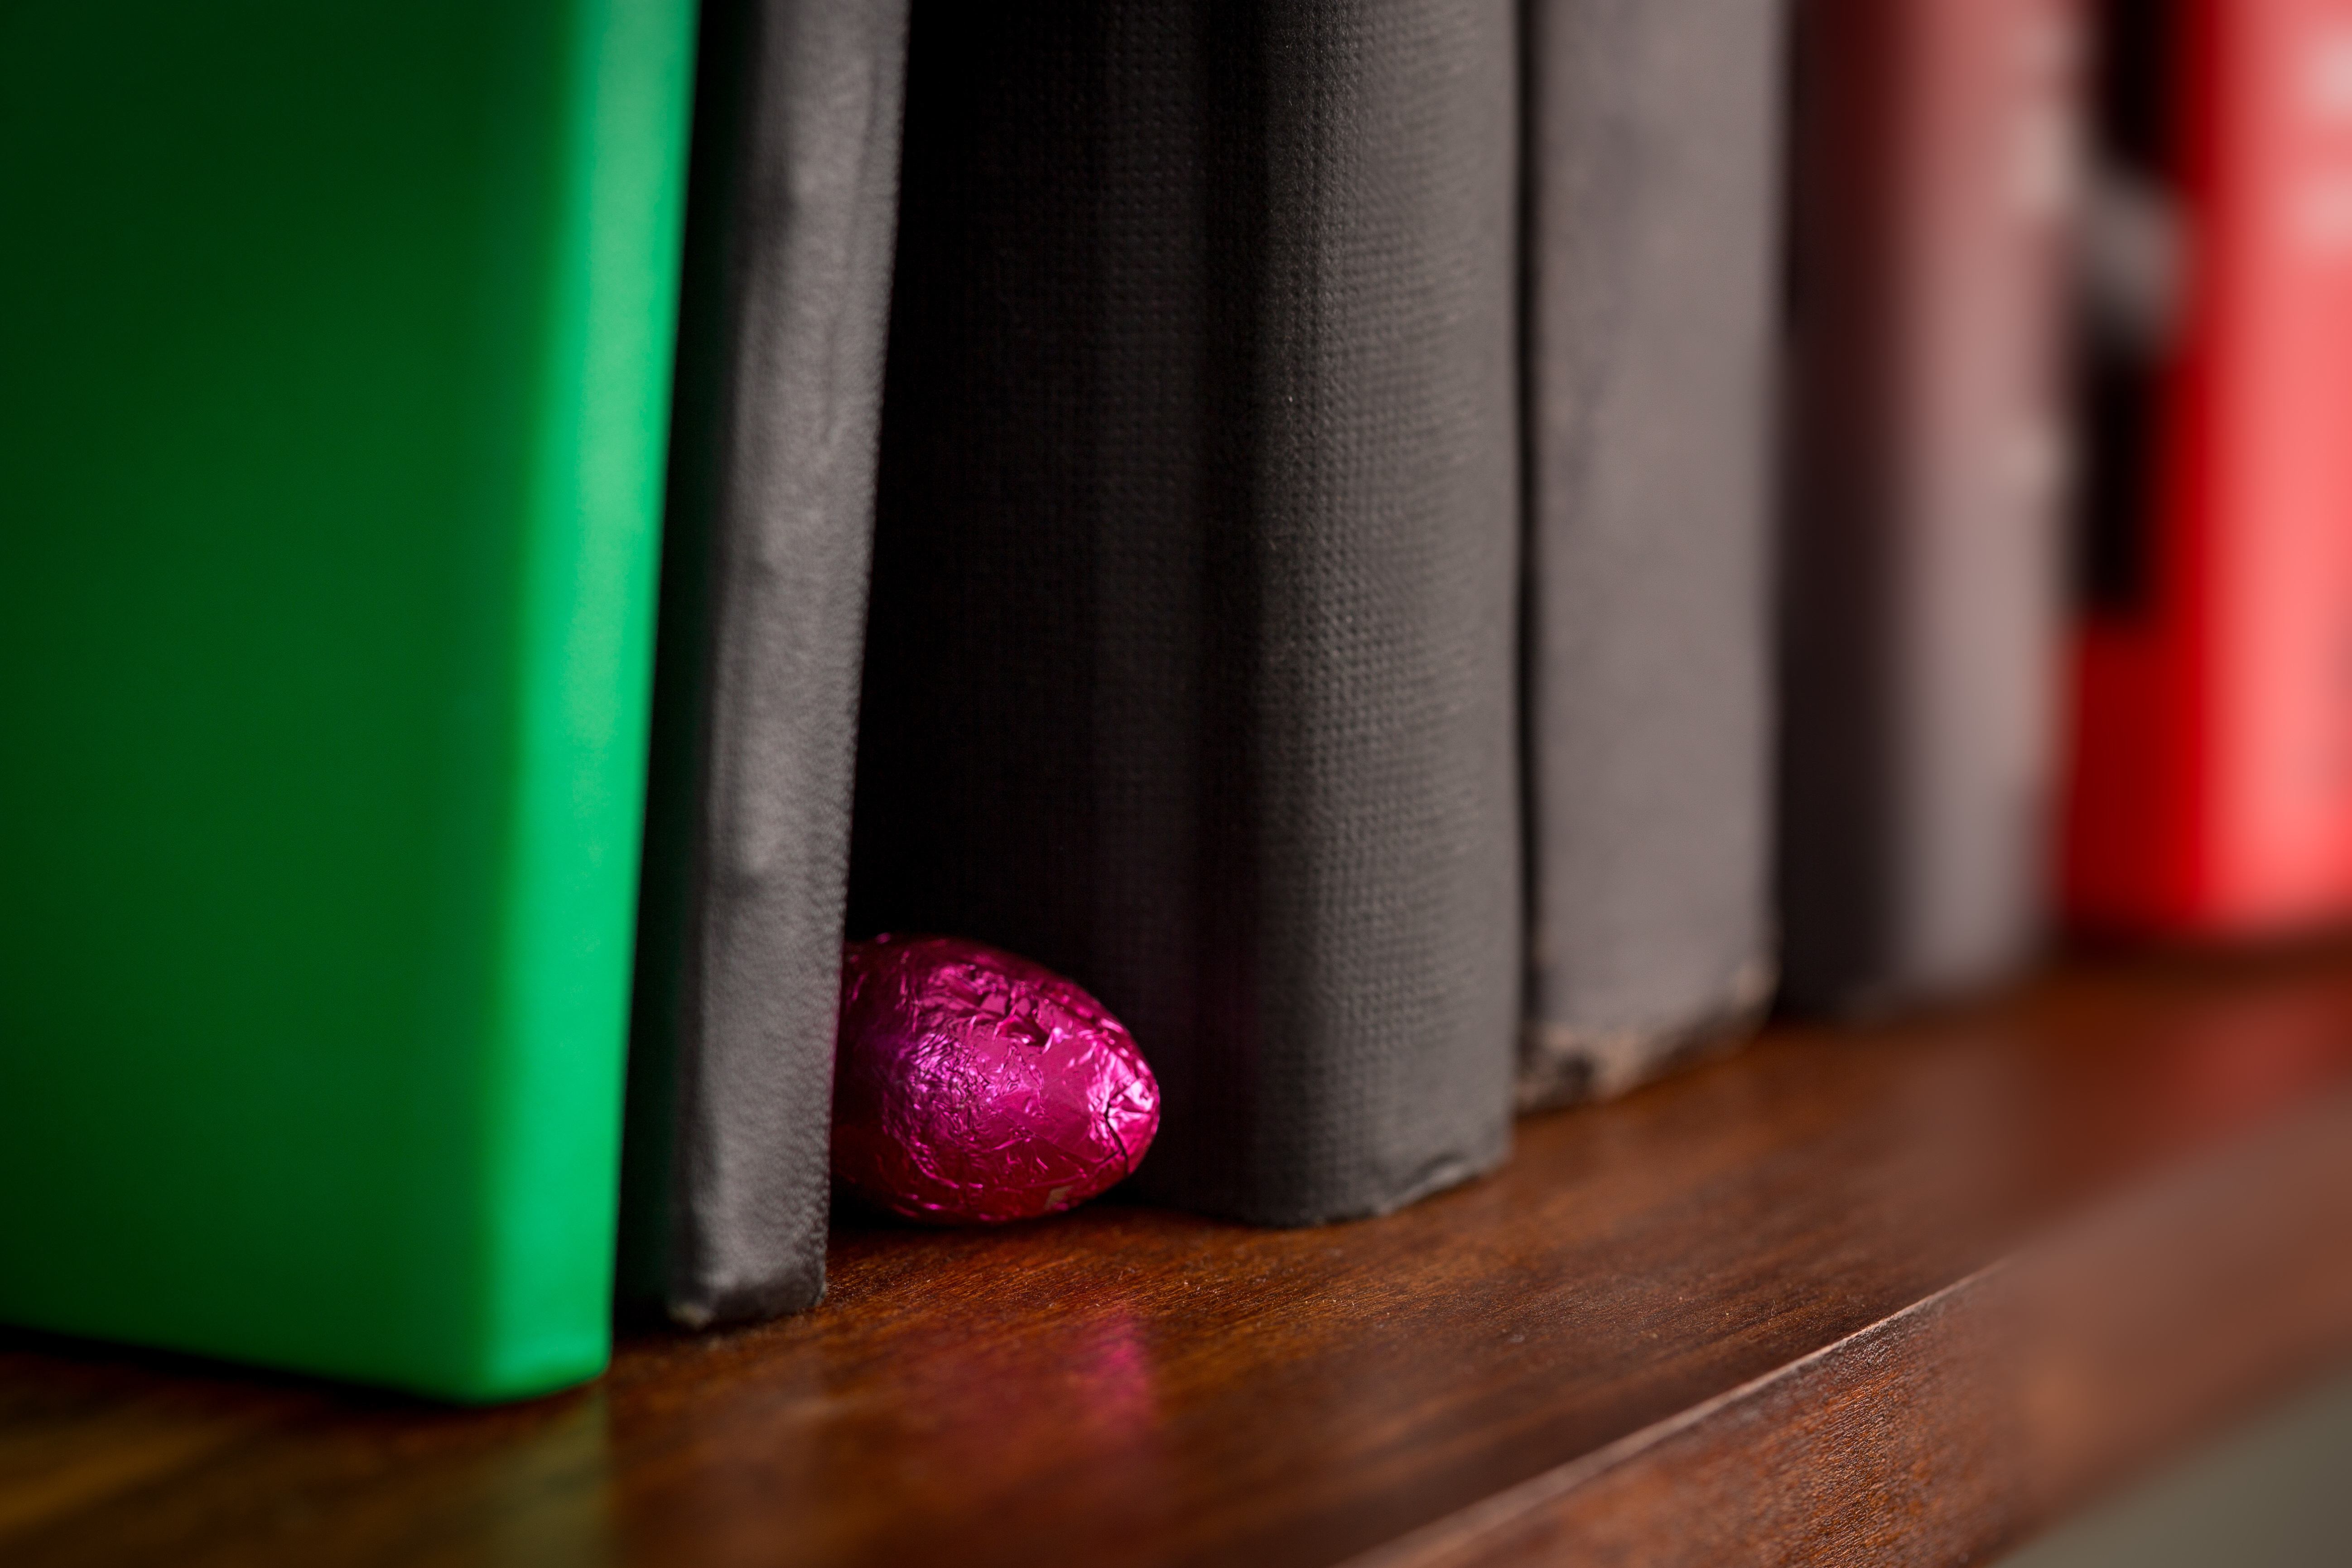 egg hidden between books on shelf